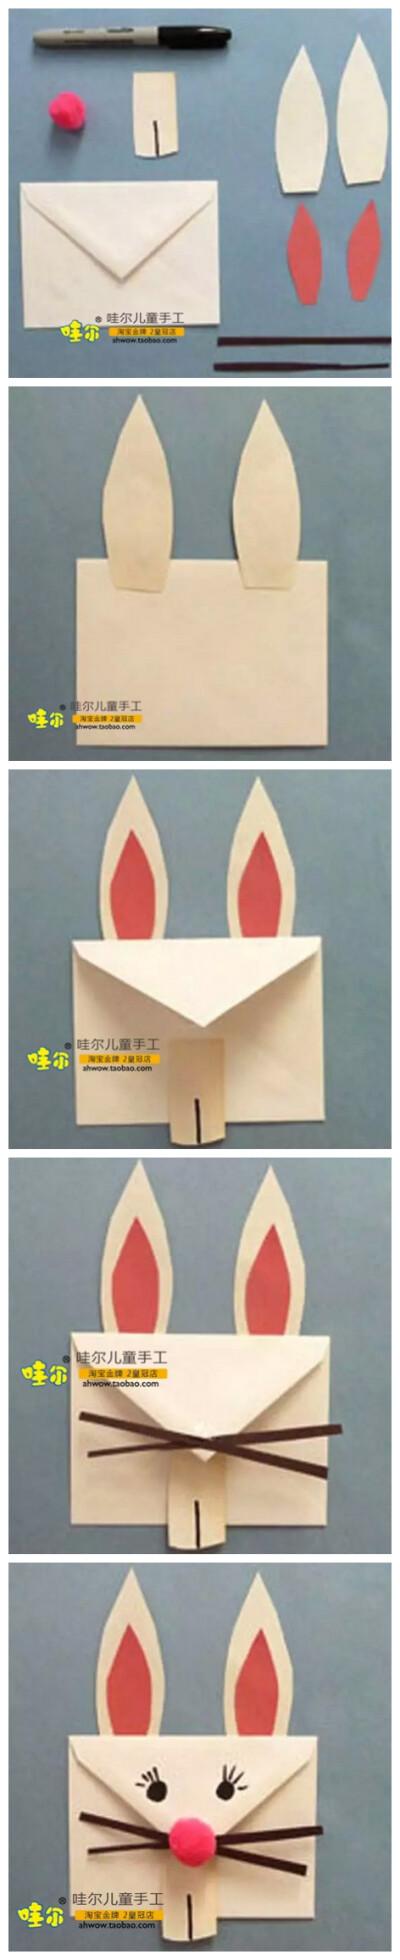 用剪刀 彩纸将小兔子贺卡的各个部分单独准备好红鼻子的部分可以用一